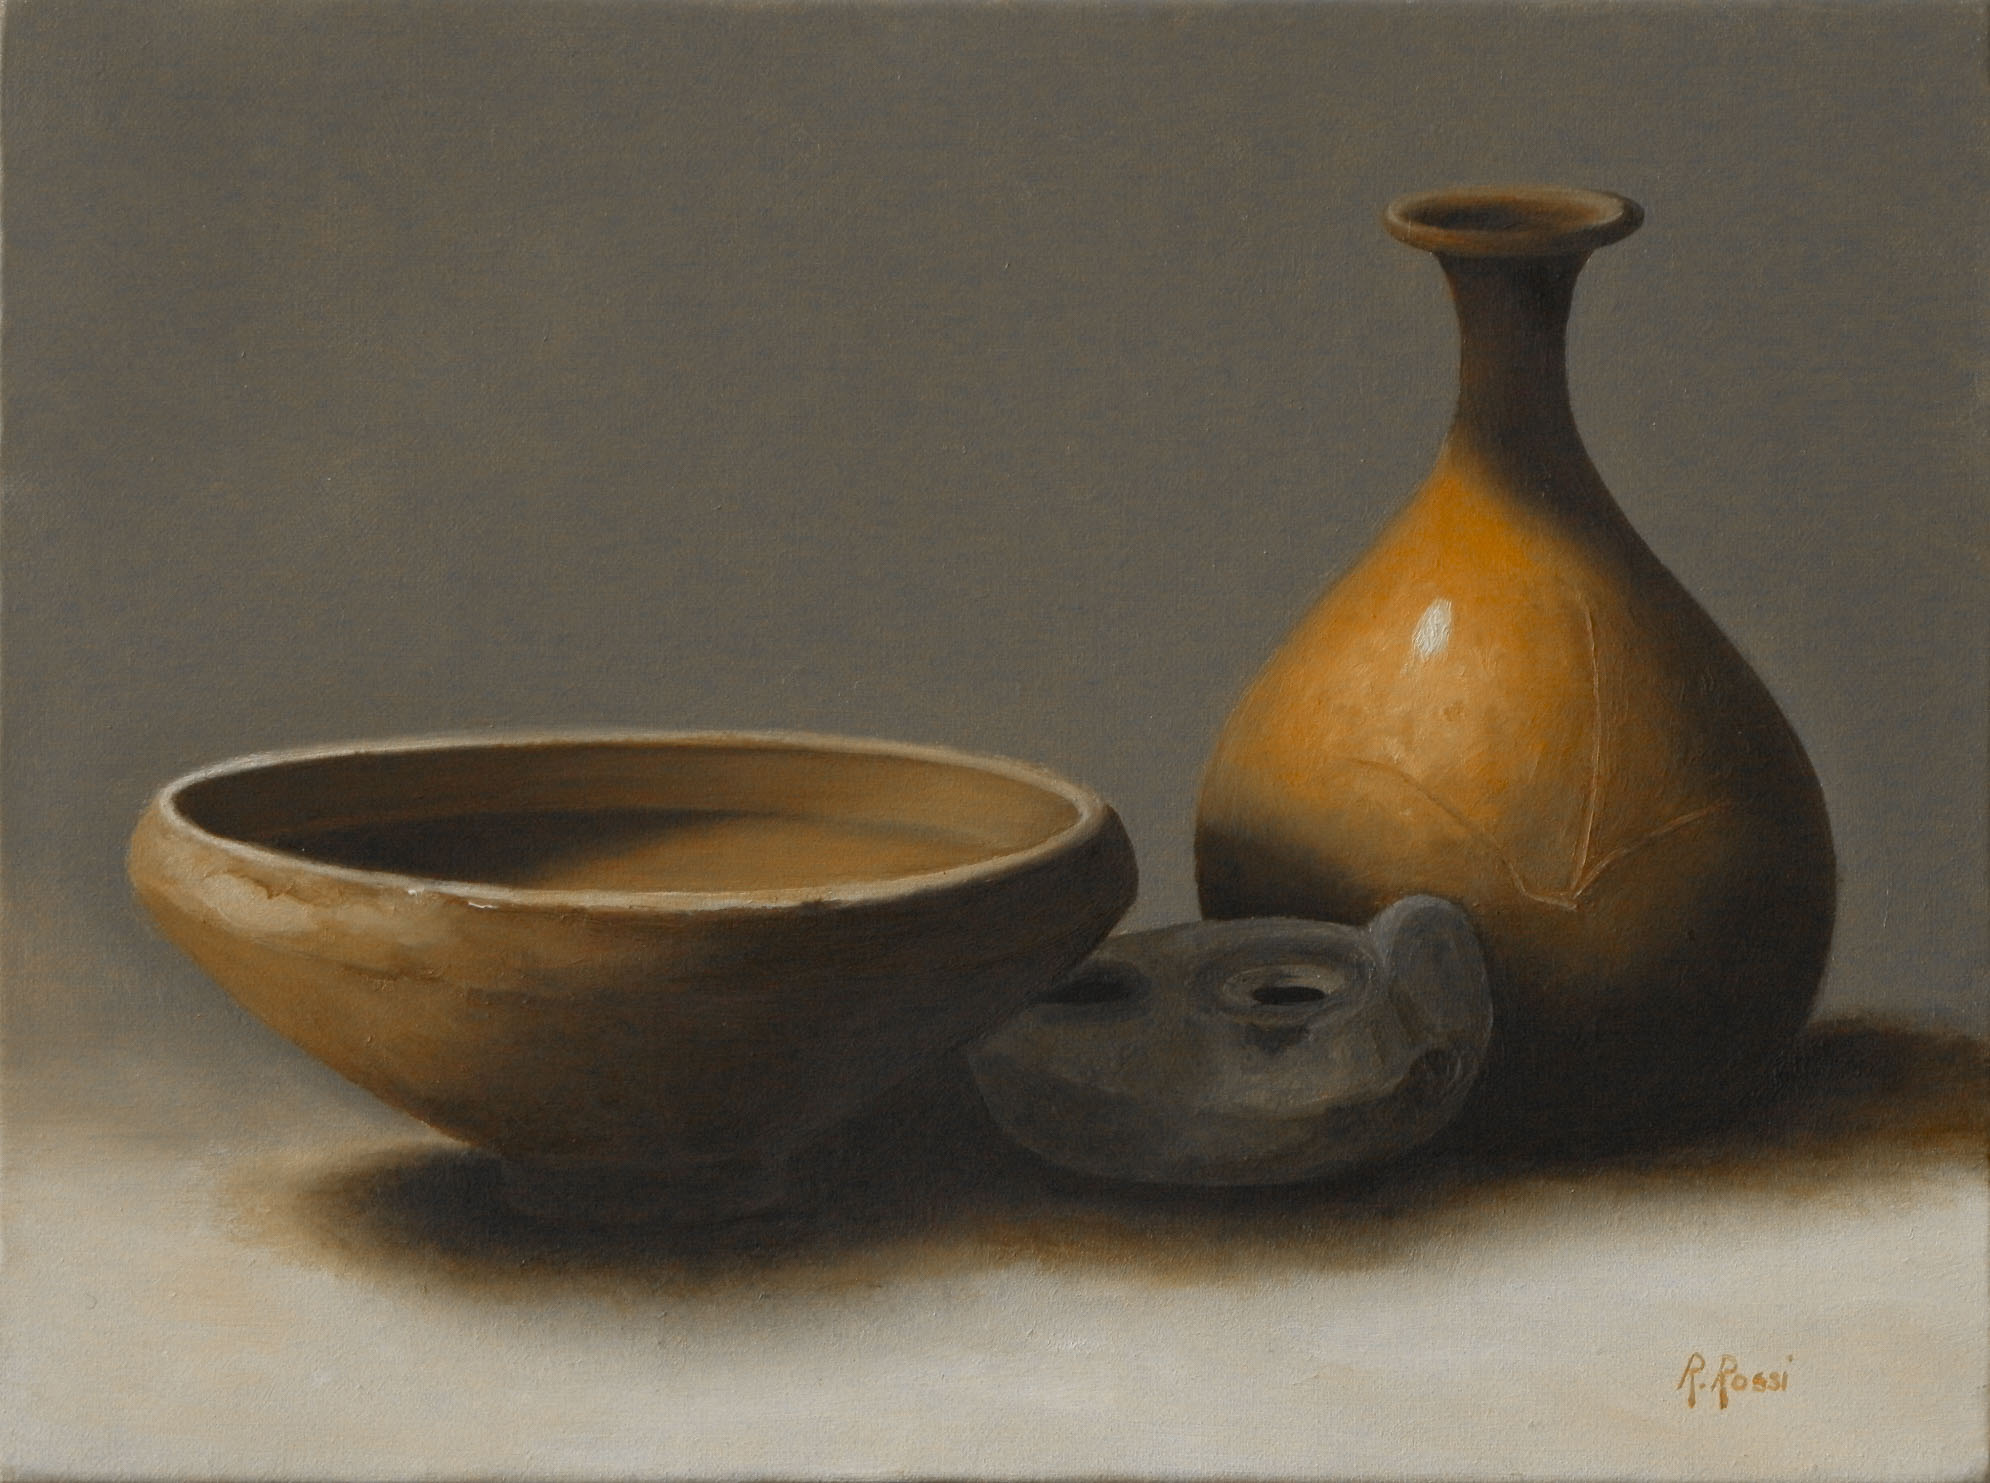 2010 roberta rossi – composizione con ceramiche etrusche – olio su tela – 18 x 24